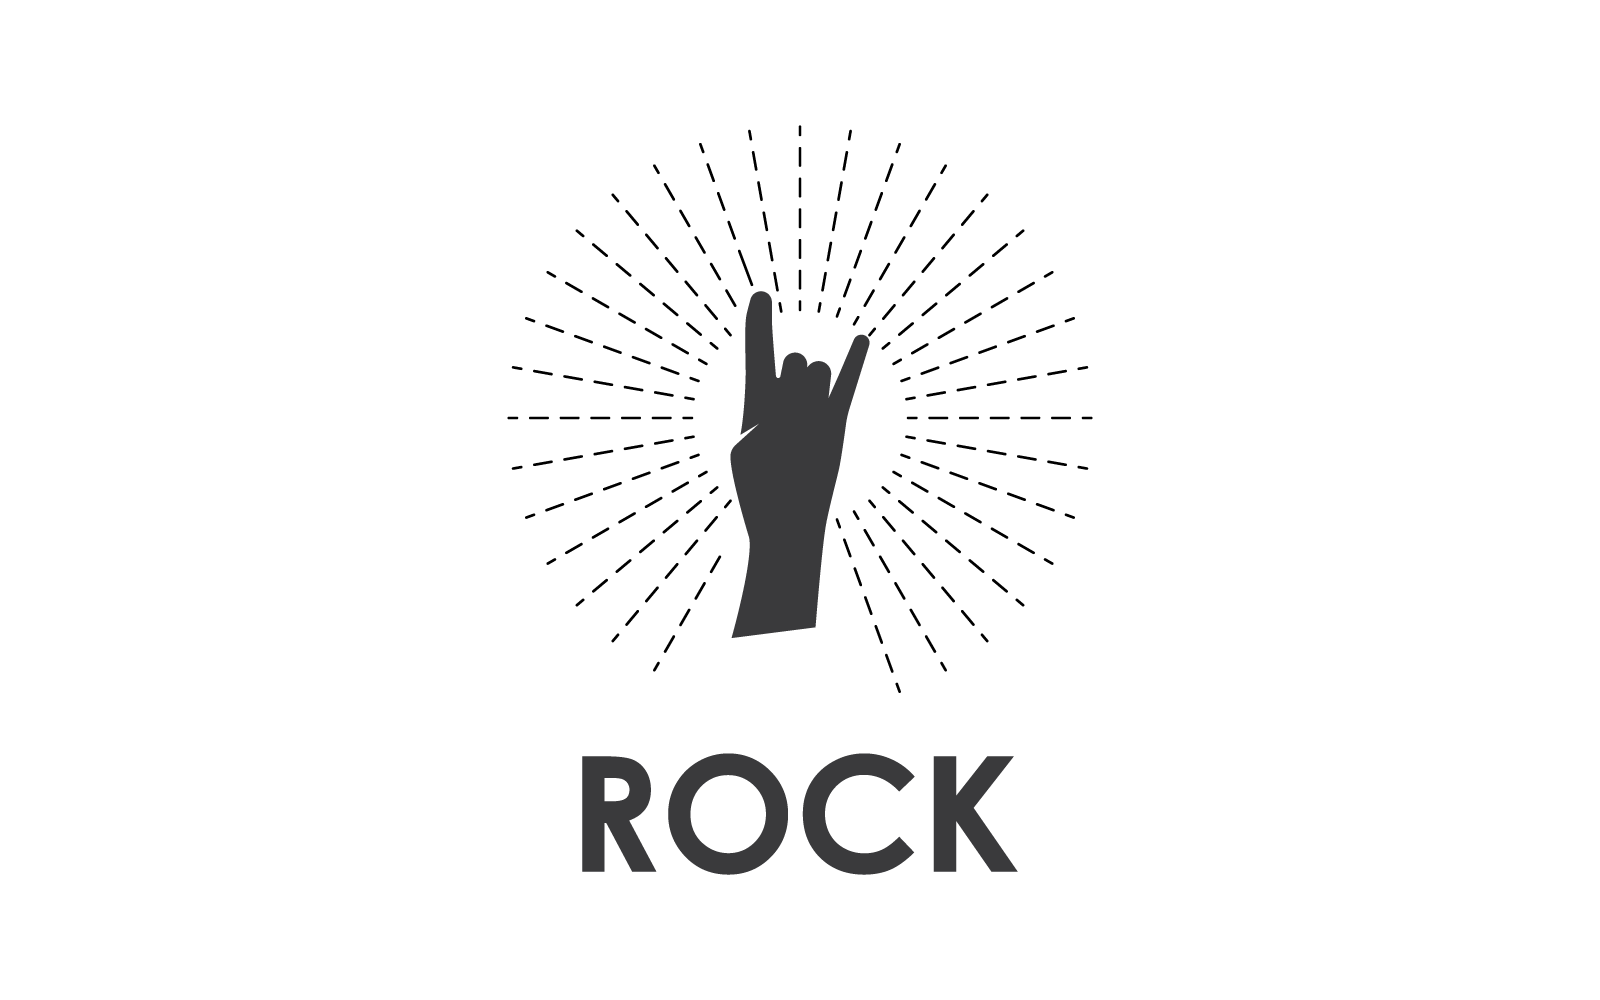 Rock hand music logo vector flat design